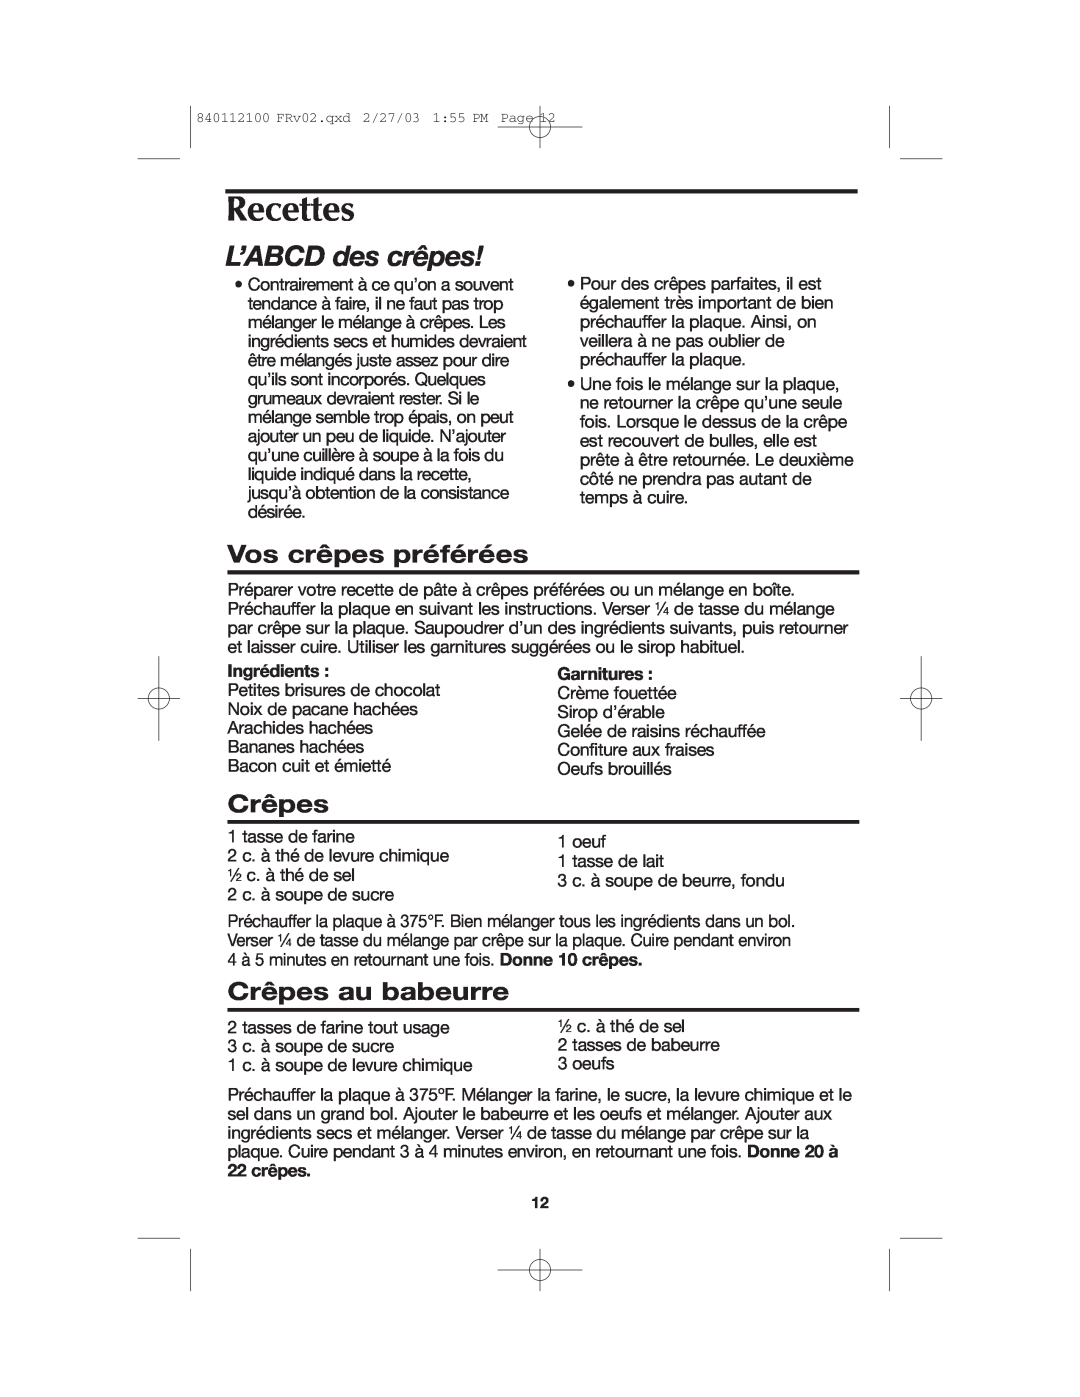 Proctor-Silex 840112100 manual Recettes, L’ABCD des crêpes, Vos crêpes préférées, Crêpes au babeurre, Ingrédients 